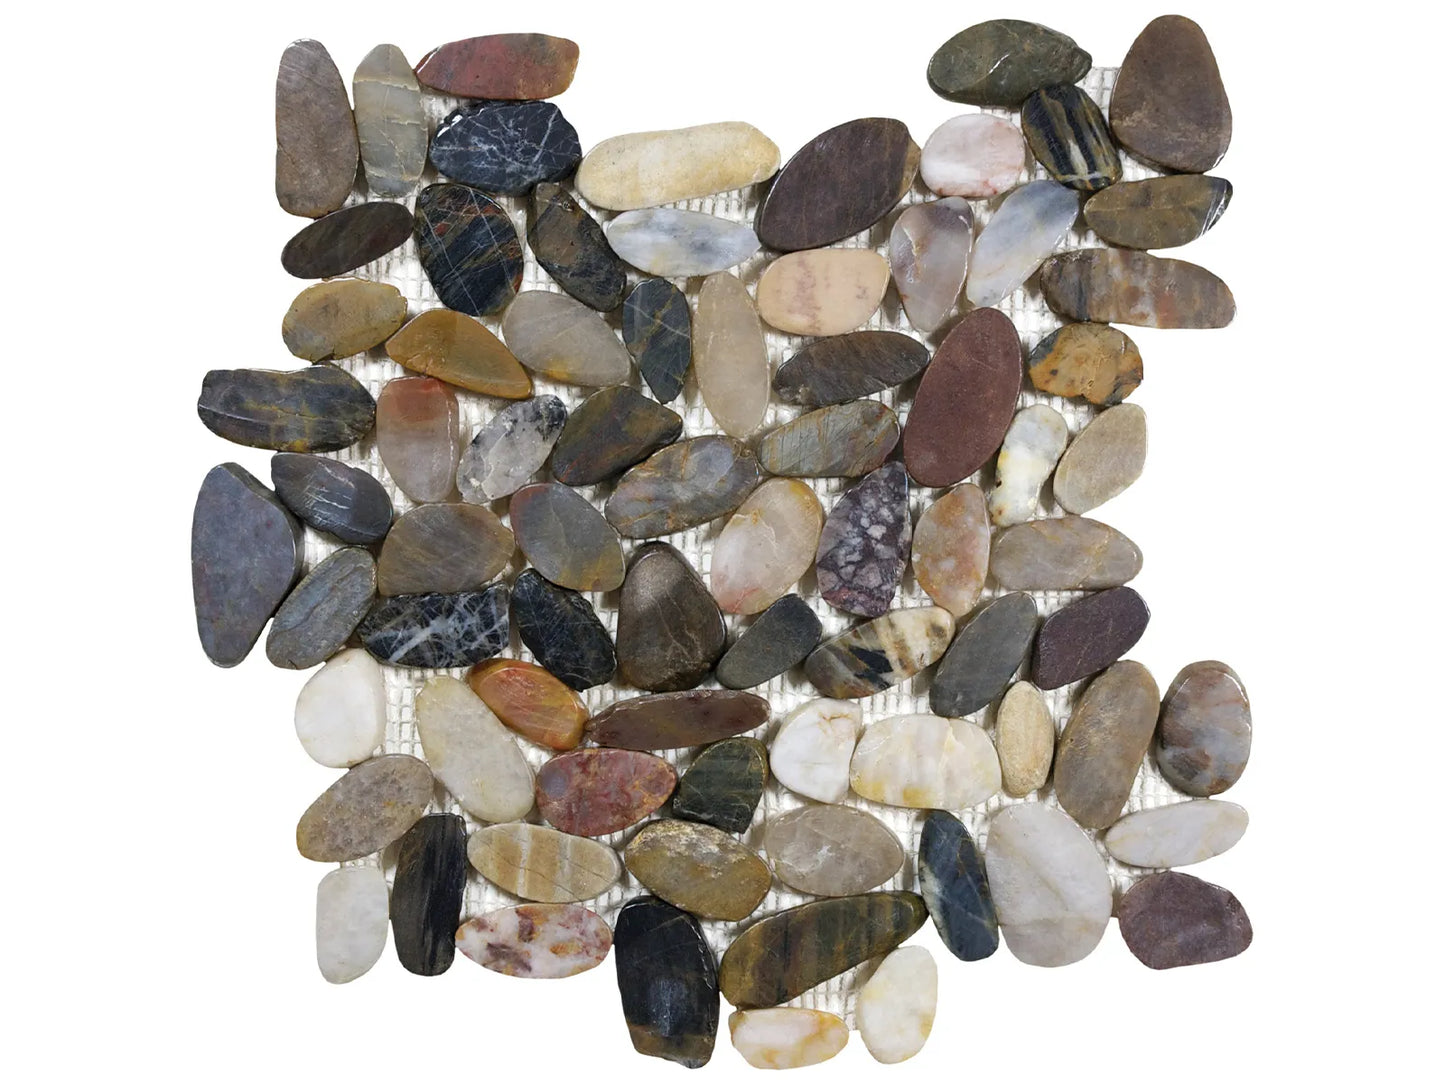 Stone Pebble Mosaics